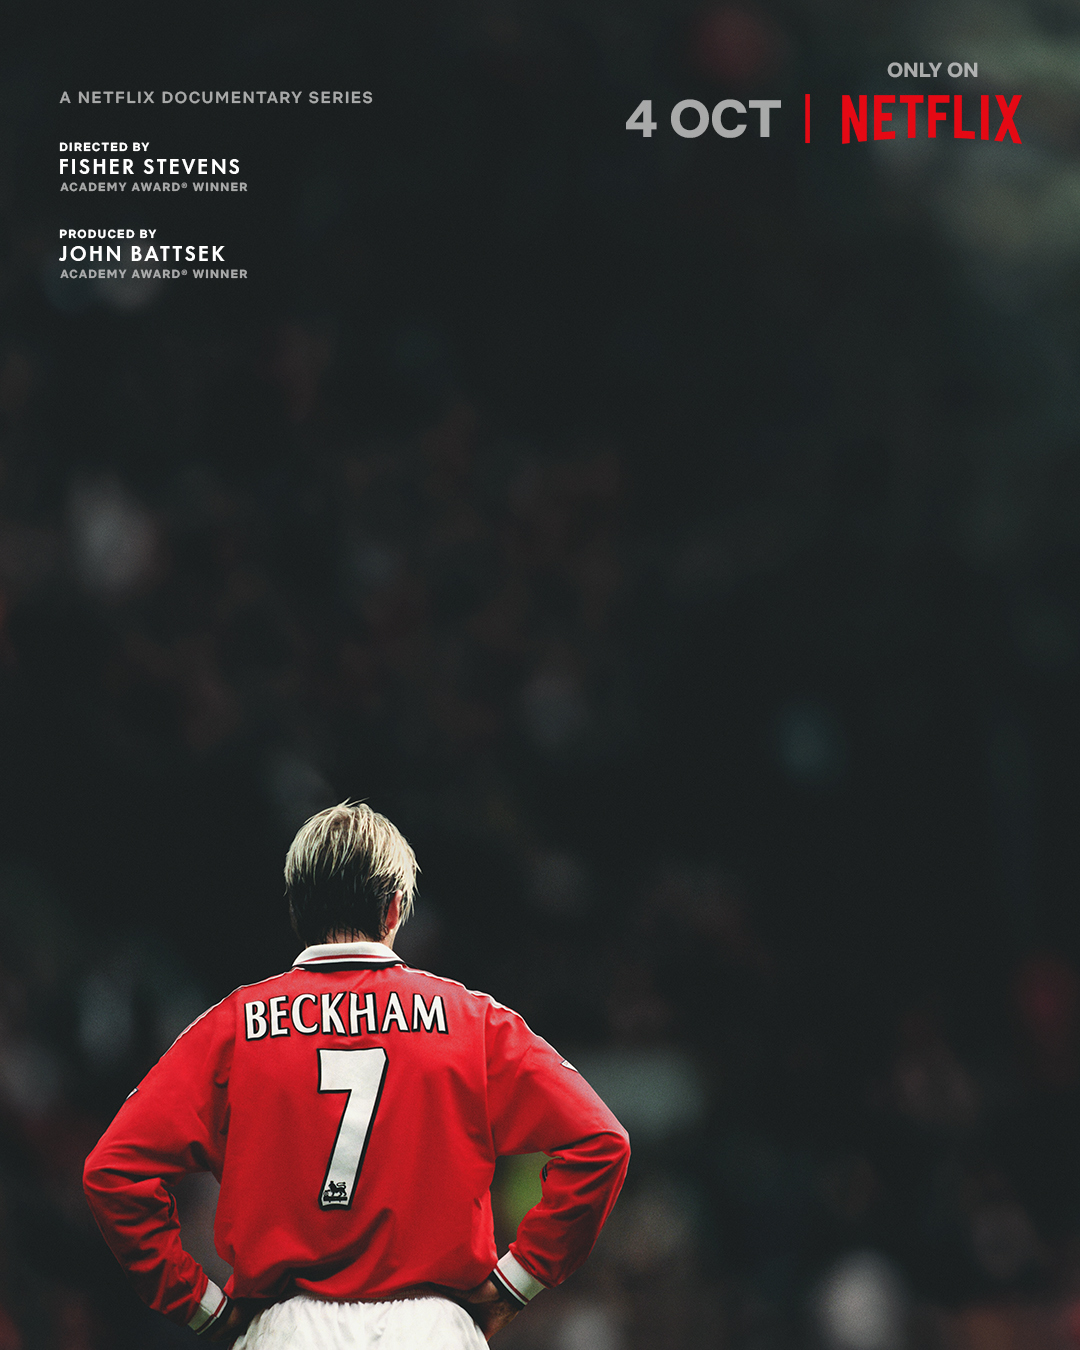     Beckham